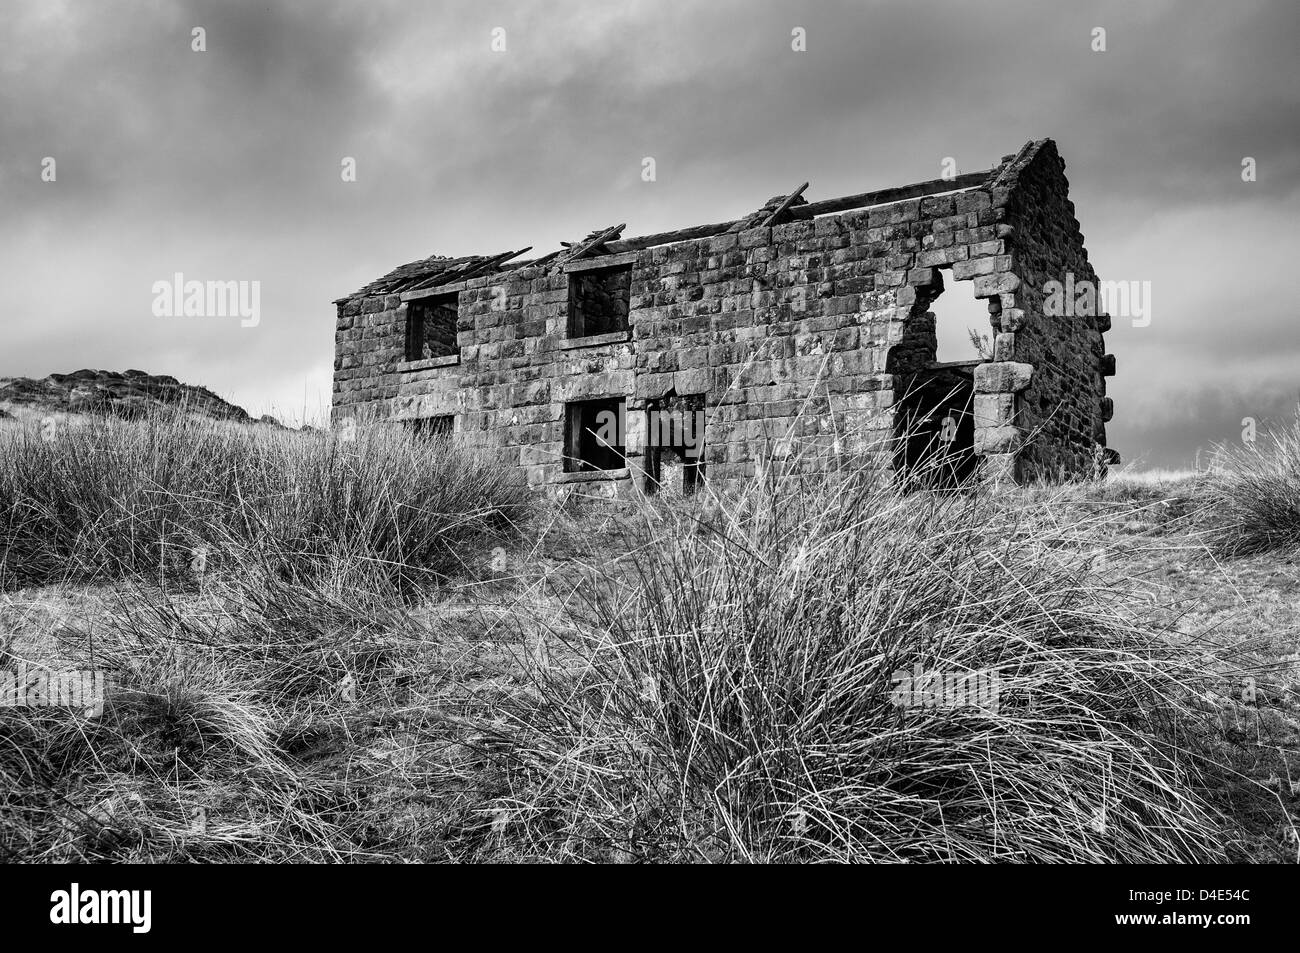 Vieille maison en pierre à l'abandon derrière les cafards dans le Peak District d'Angleterre Banque D'Images